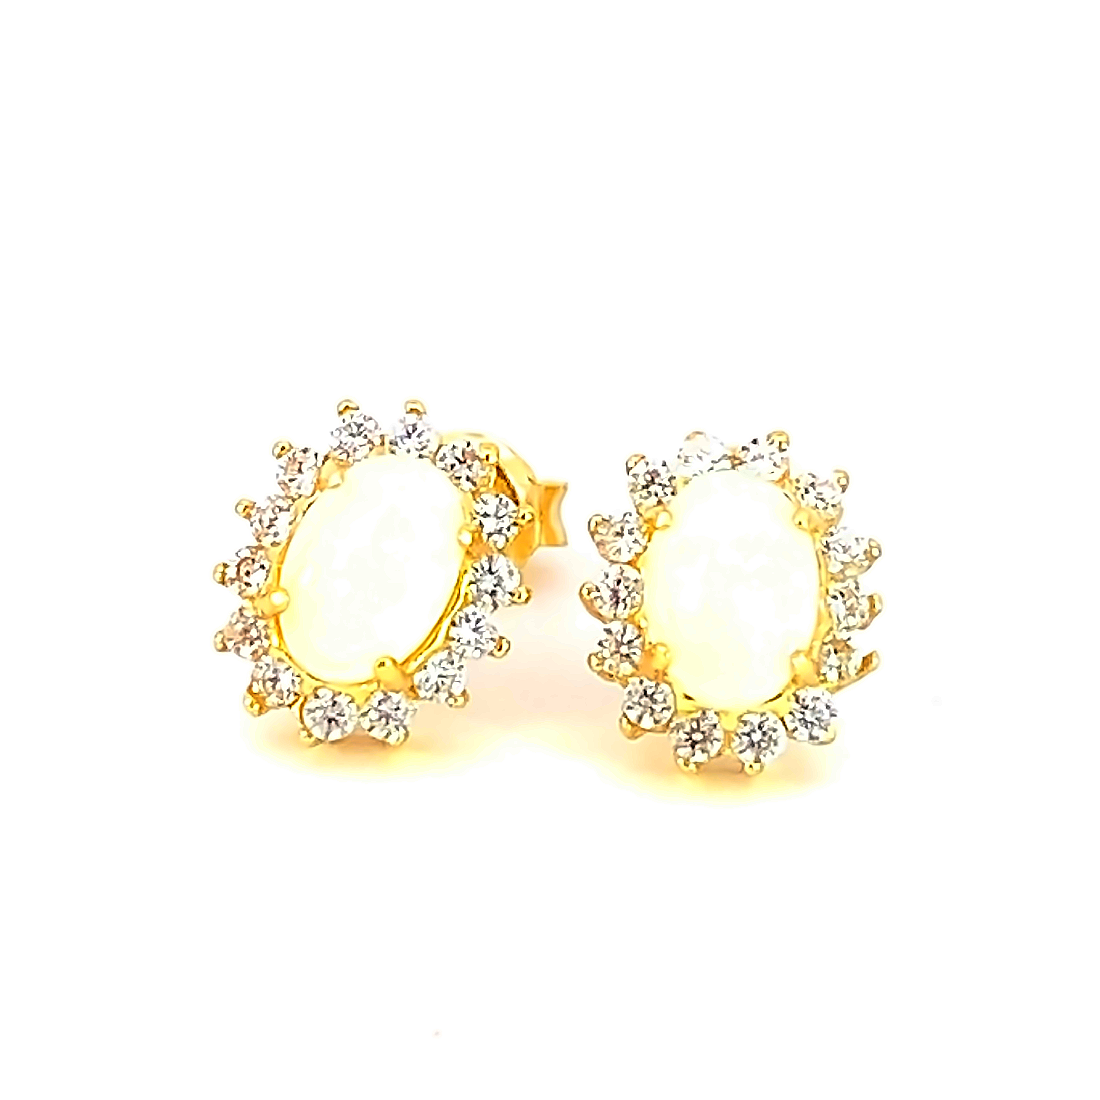 Gold Plated silver cluster 7x5mm White Opal earrings - Masterpiece Jewellery Opal & Gems Sydney Australia | Online Shop